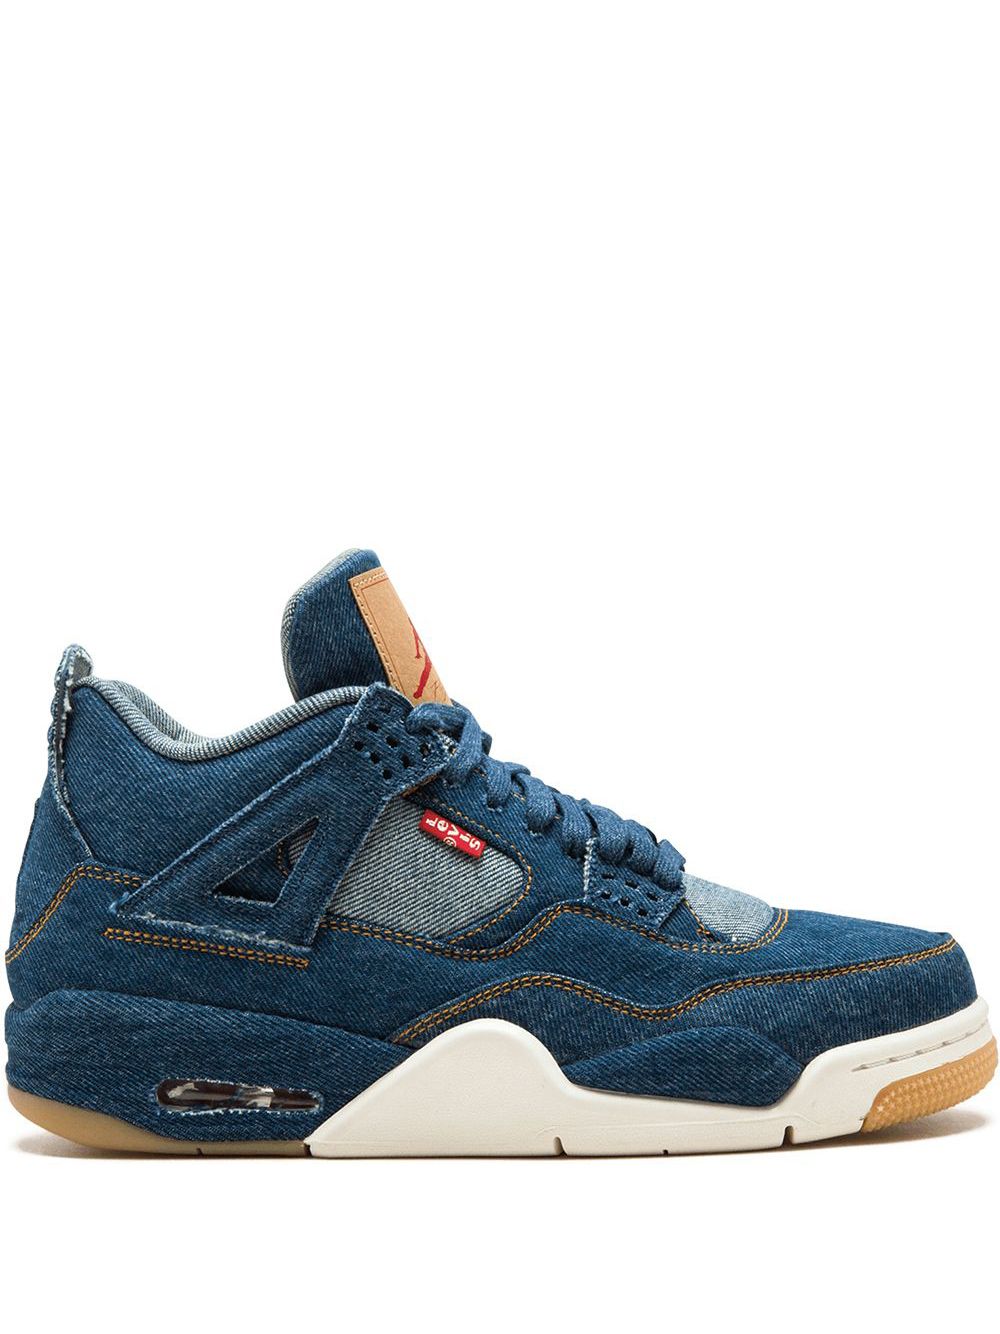 Jordan x Levi's Air Jordan 4 Retro NRG sneakers - Blue